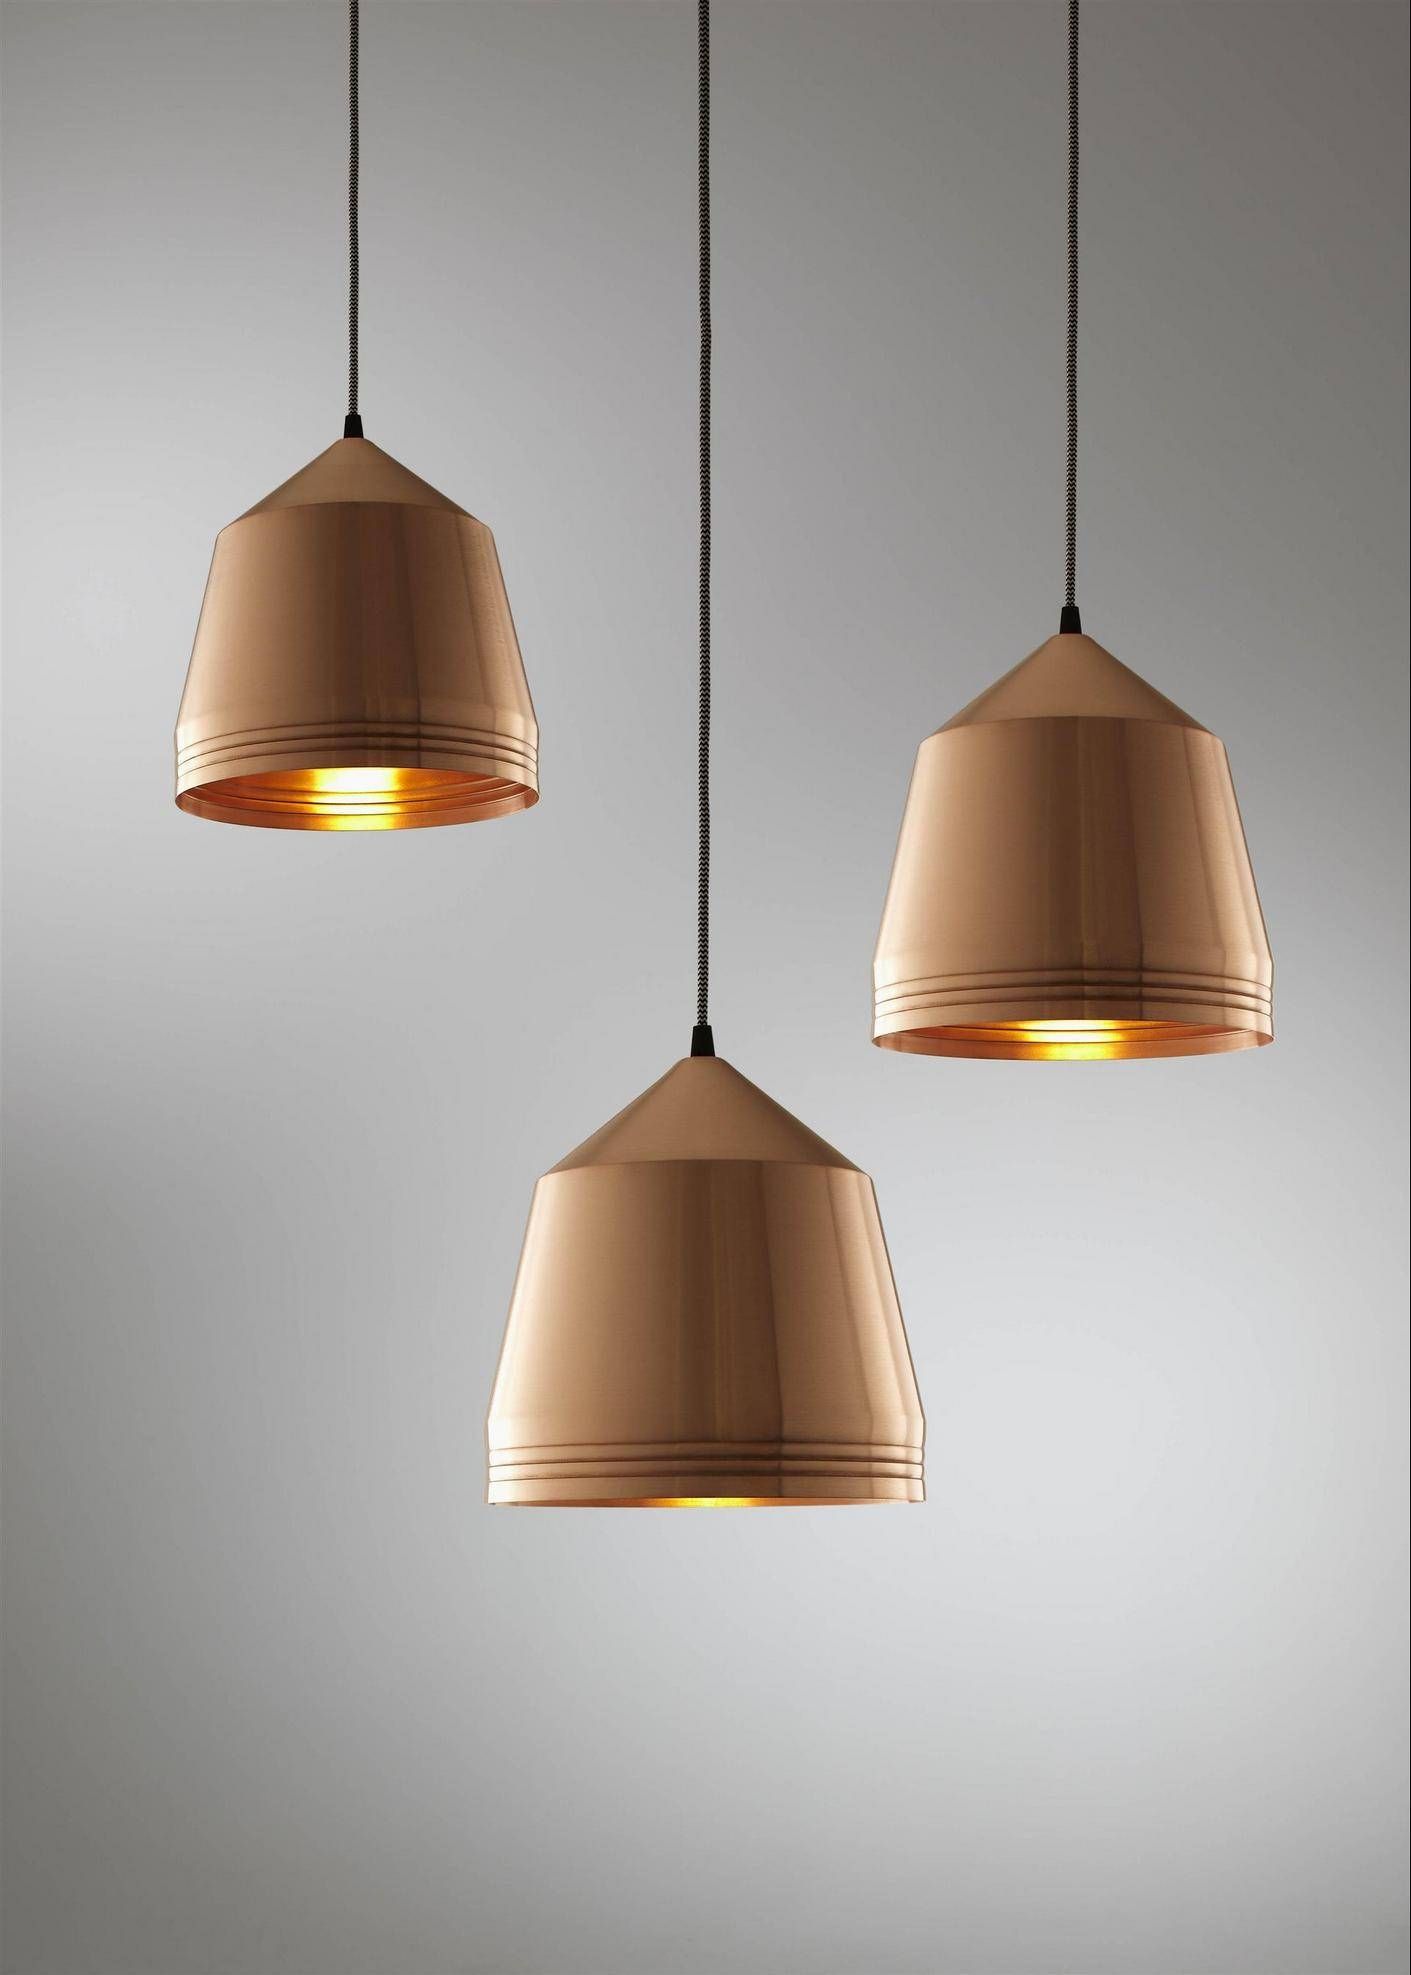 Living Room Copper Pendant Light Copper Pendant Lights For With Hammered Copper Pendant Lights 